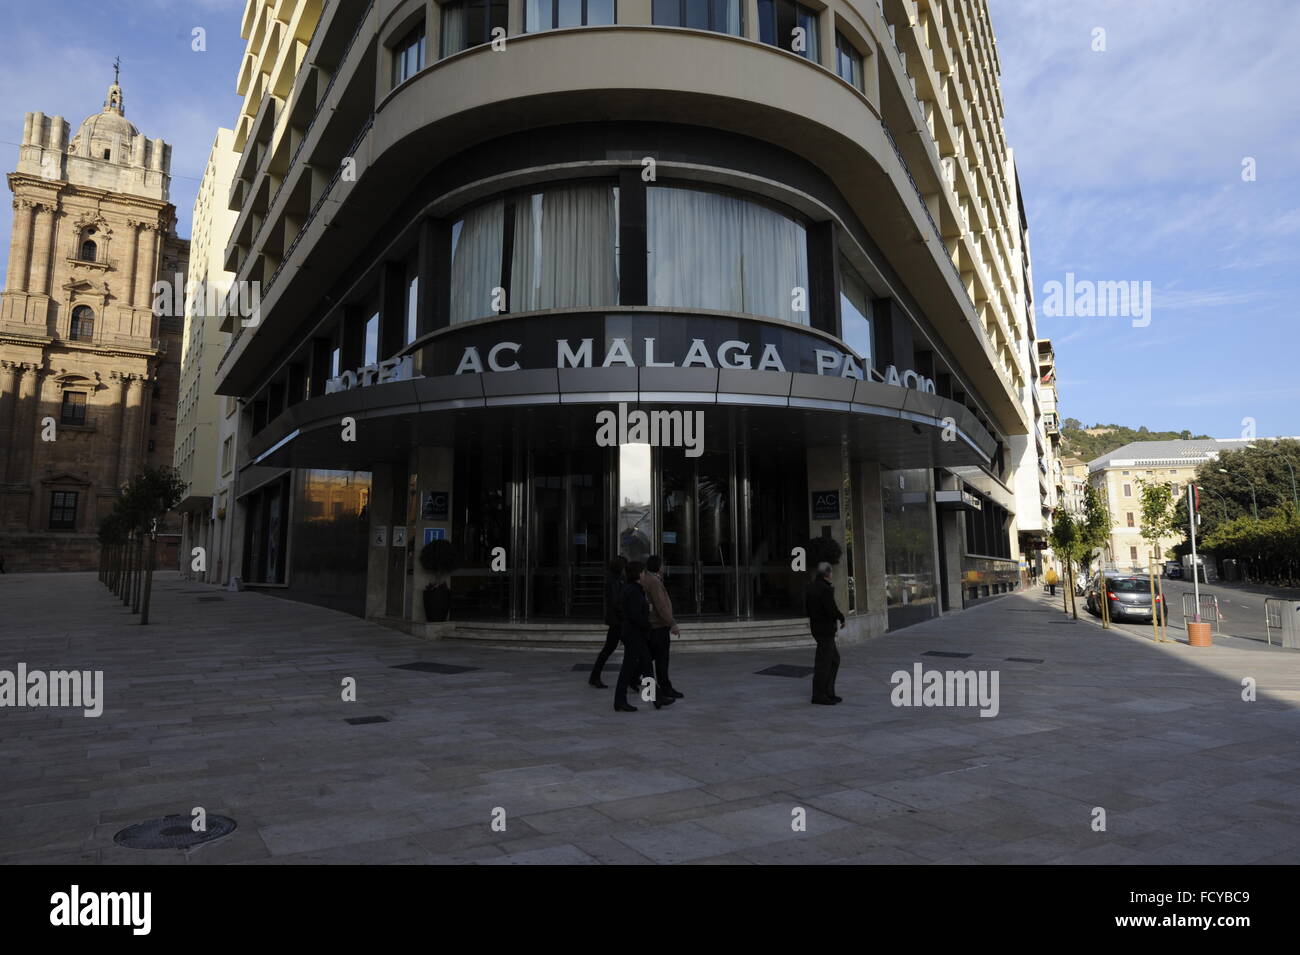 AC Hotel Málaga Palacio Marriott 5 star in central Malaga Spain. Stock Photo